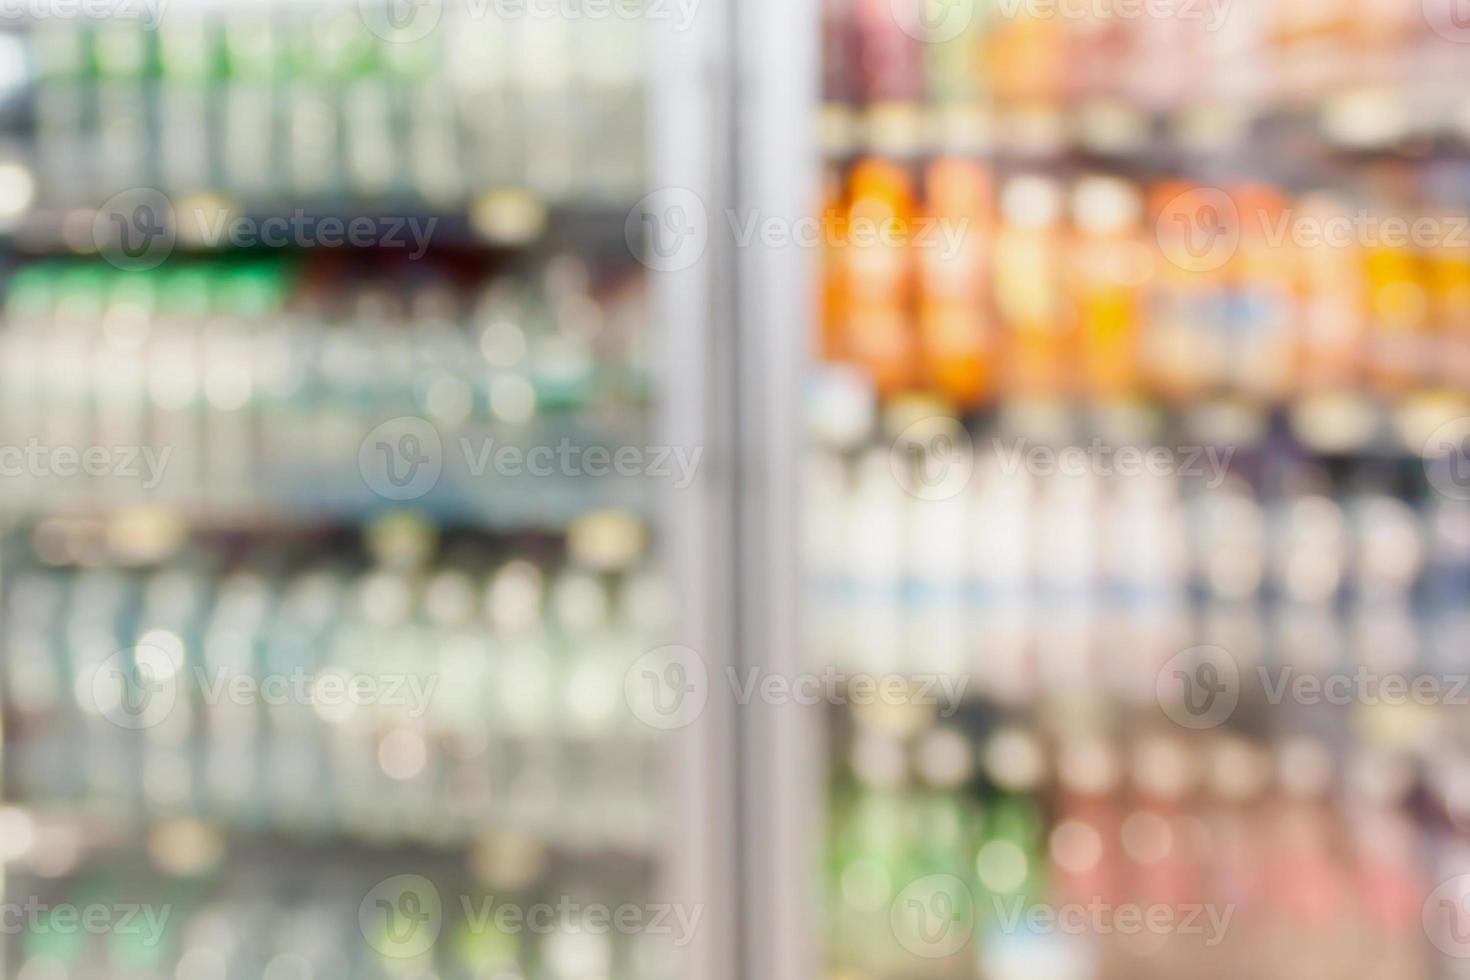 supermarkt koelkast planken onscherpe achtergrond foto